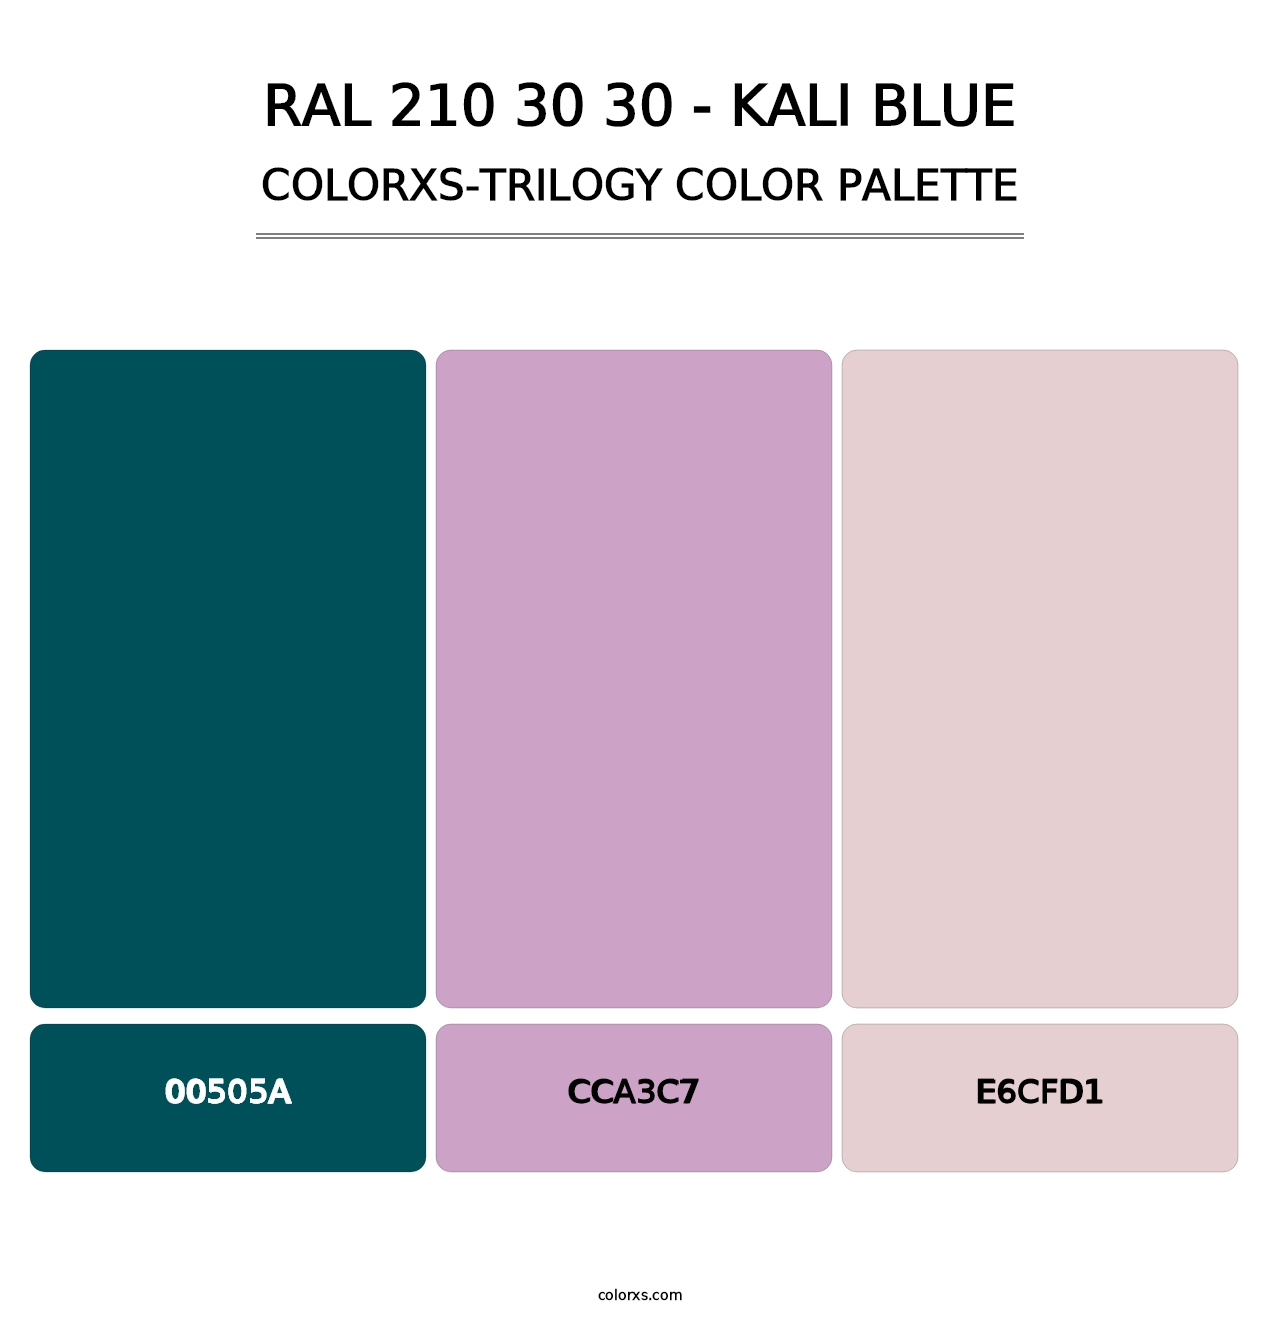 RAL 210 30 30 - Kali Blue - Colorxs Trilogy Palette